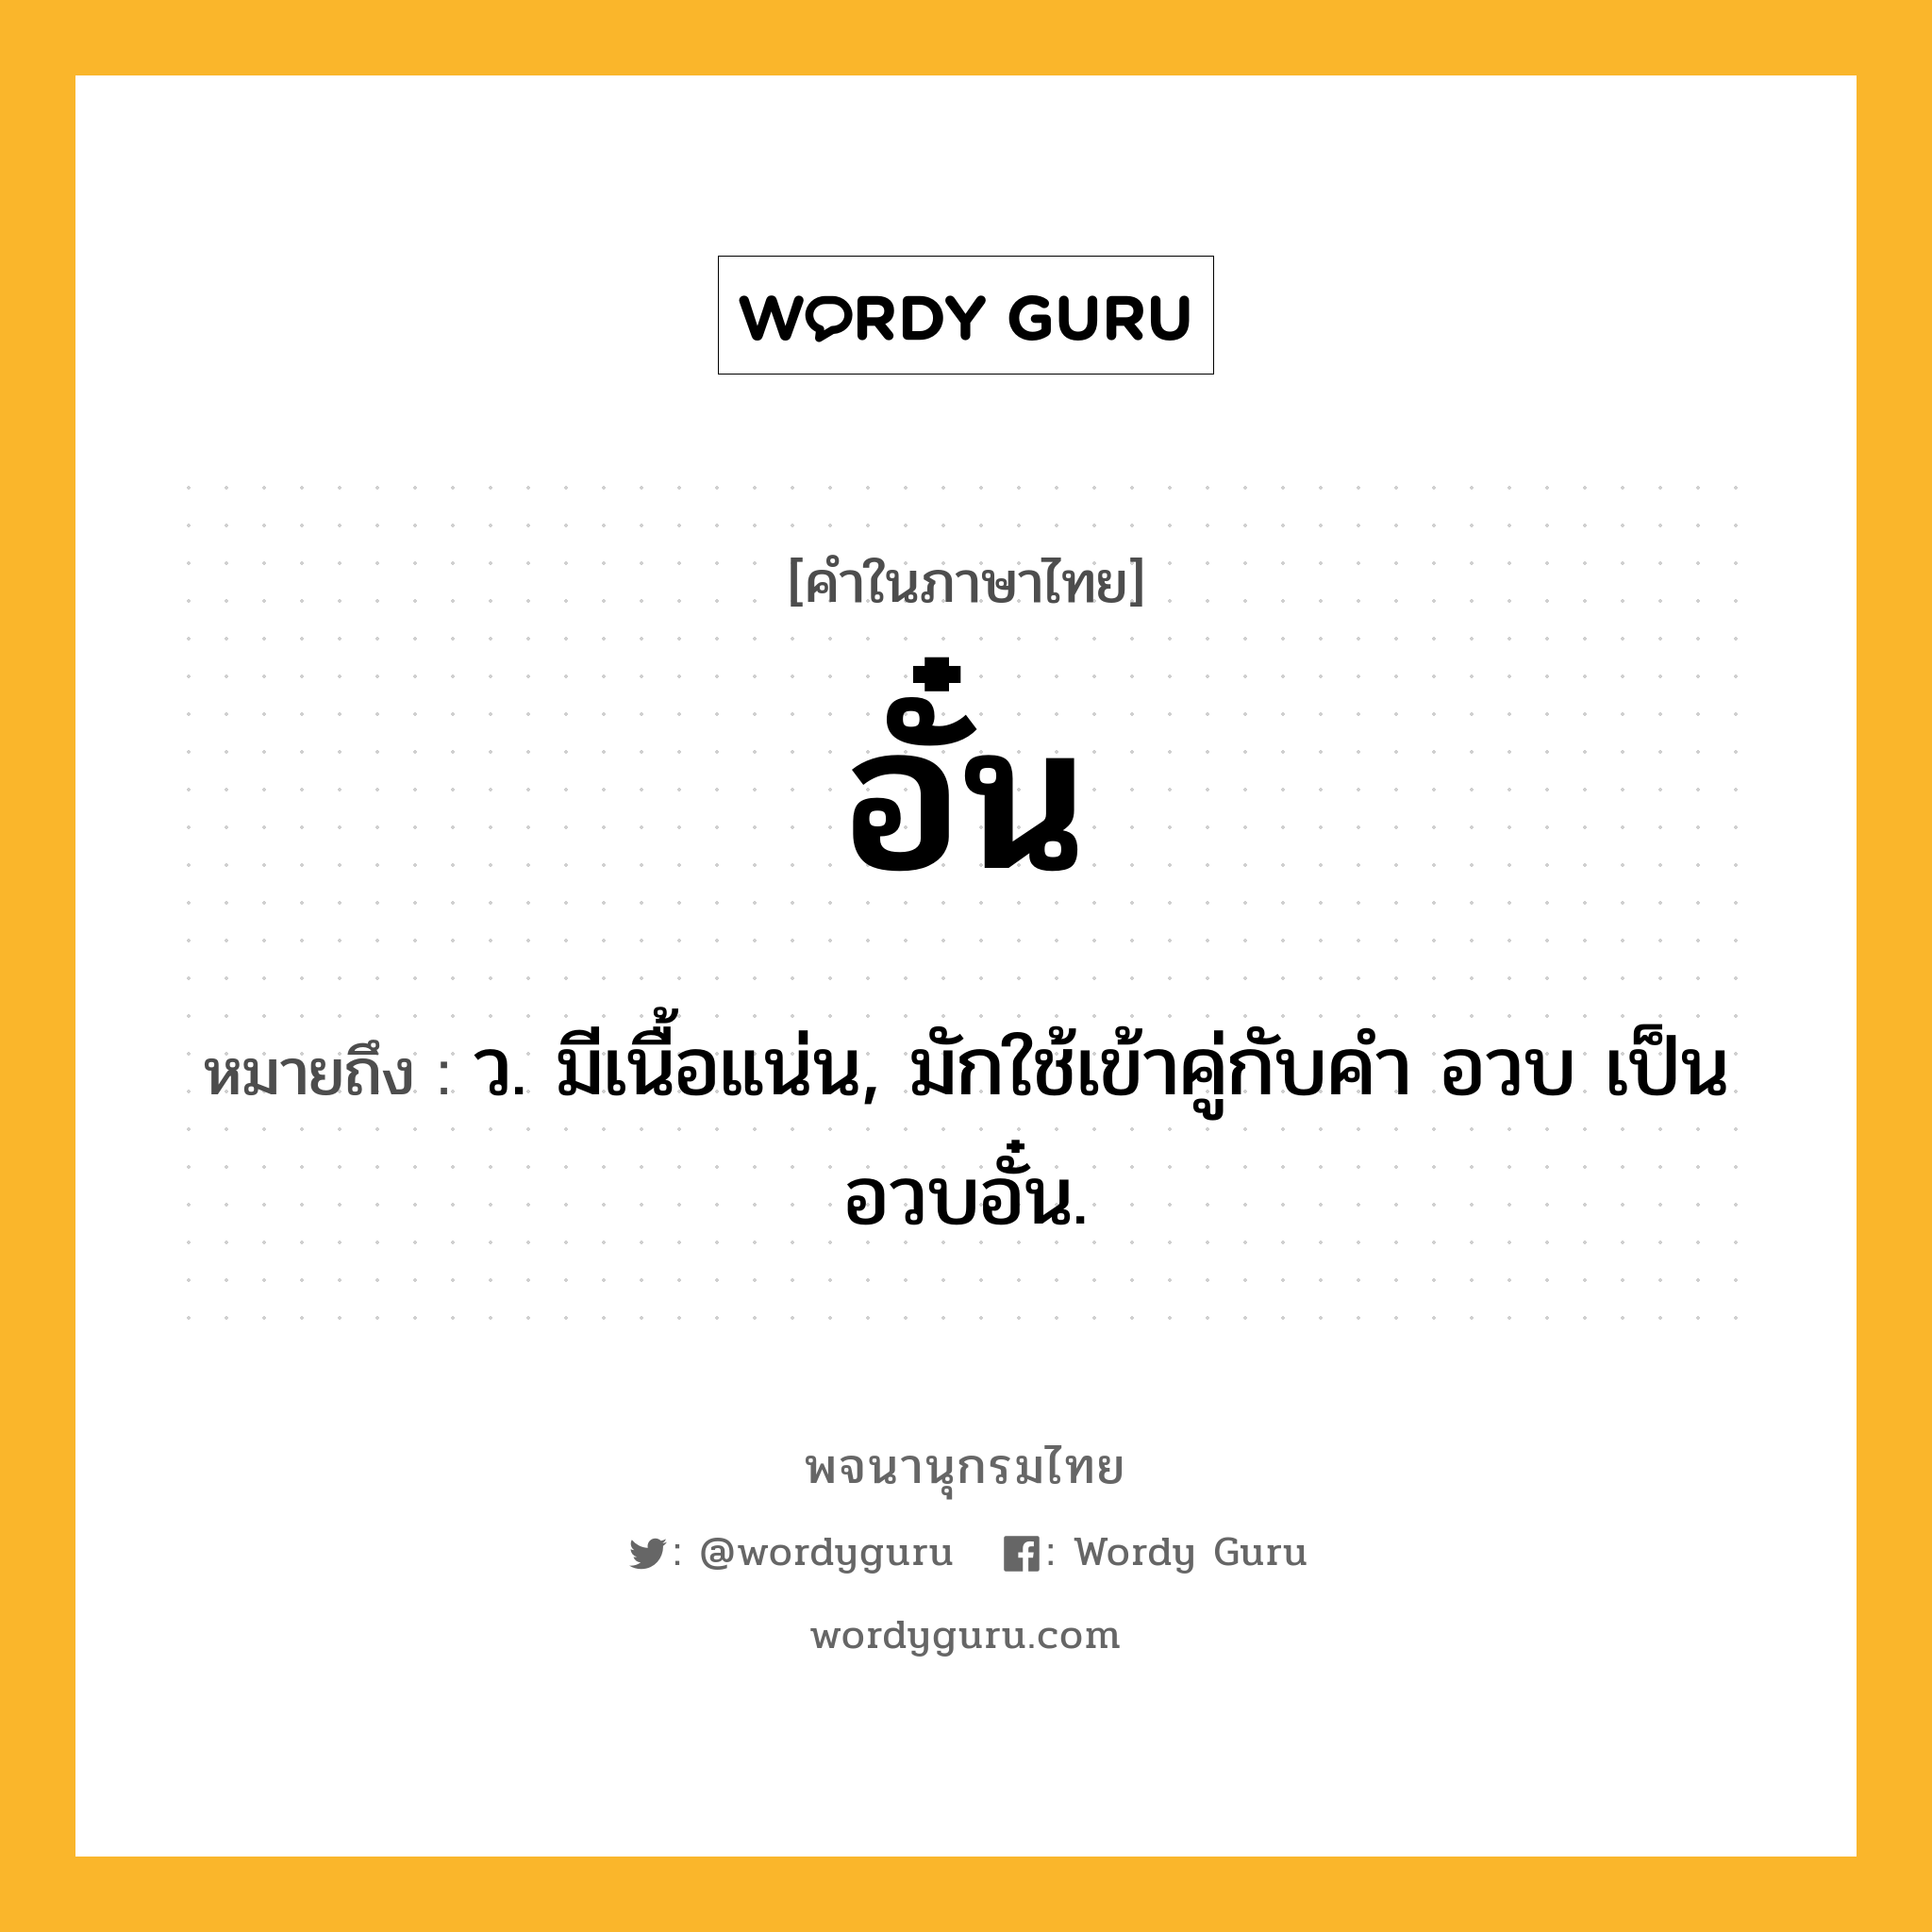 อั๋น หมายถึงอะไร?, คำในภาษาไทย อั๋น หมายถึง ว. มีเนื้อแน่น, มักใช้เข้าคู่กับคำ อวบ เป็น อวบอั๋น.